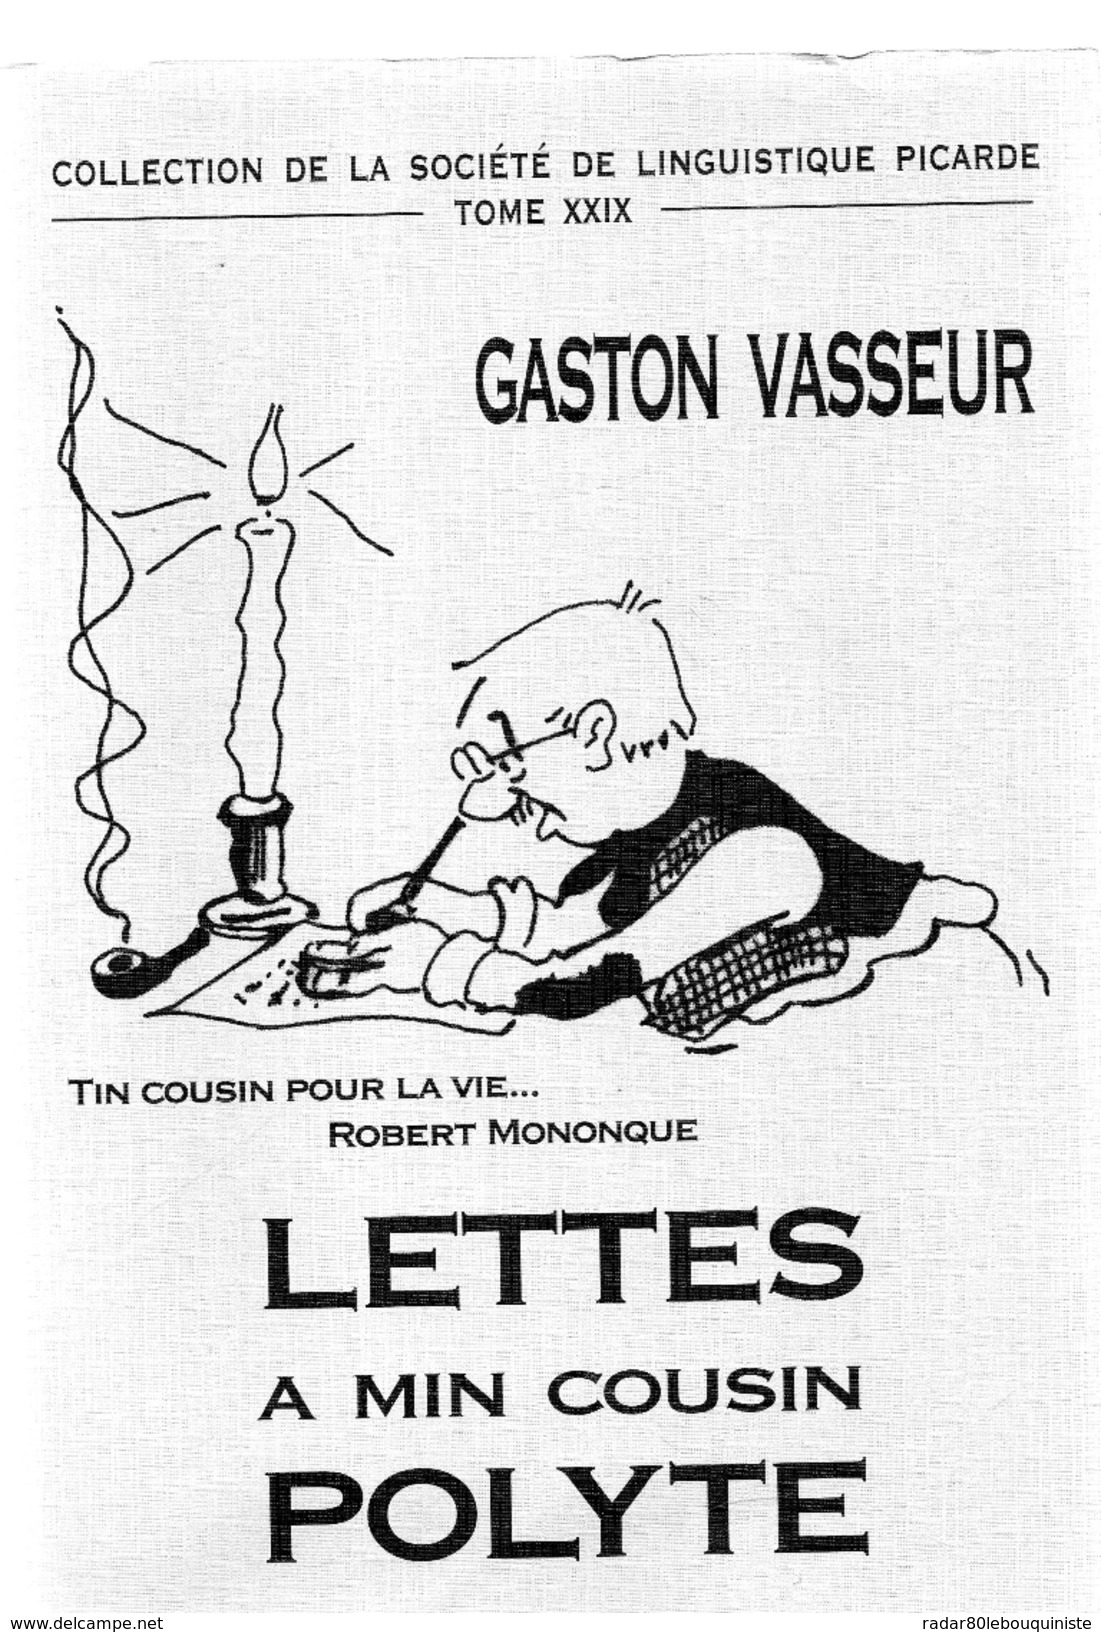 Lettes A Min Cousin Polyte,Tin Cousin Pour La Vie...Robert Mononque.GASTON VASSEUR.945 Pages.2002. - Picardie - Nord-Pas-de-Calais